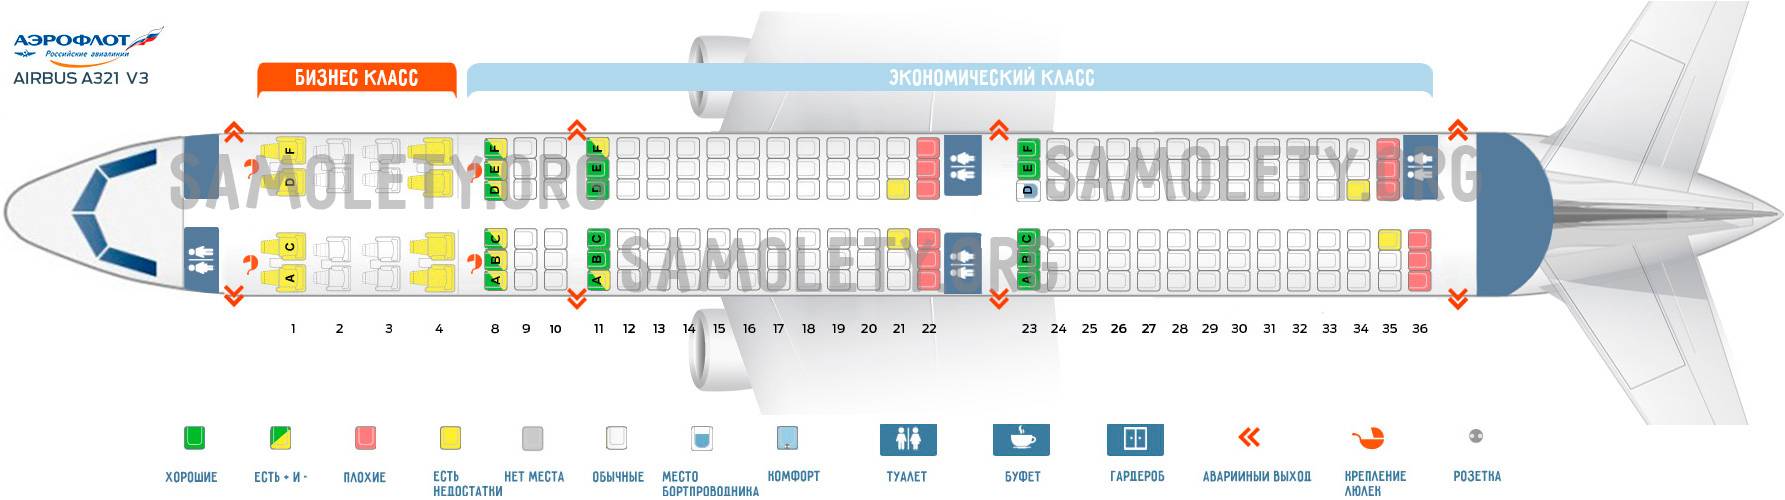 Как выбрать лучшие места в самолетах уральских авиалиний - aviacompany.com